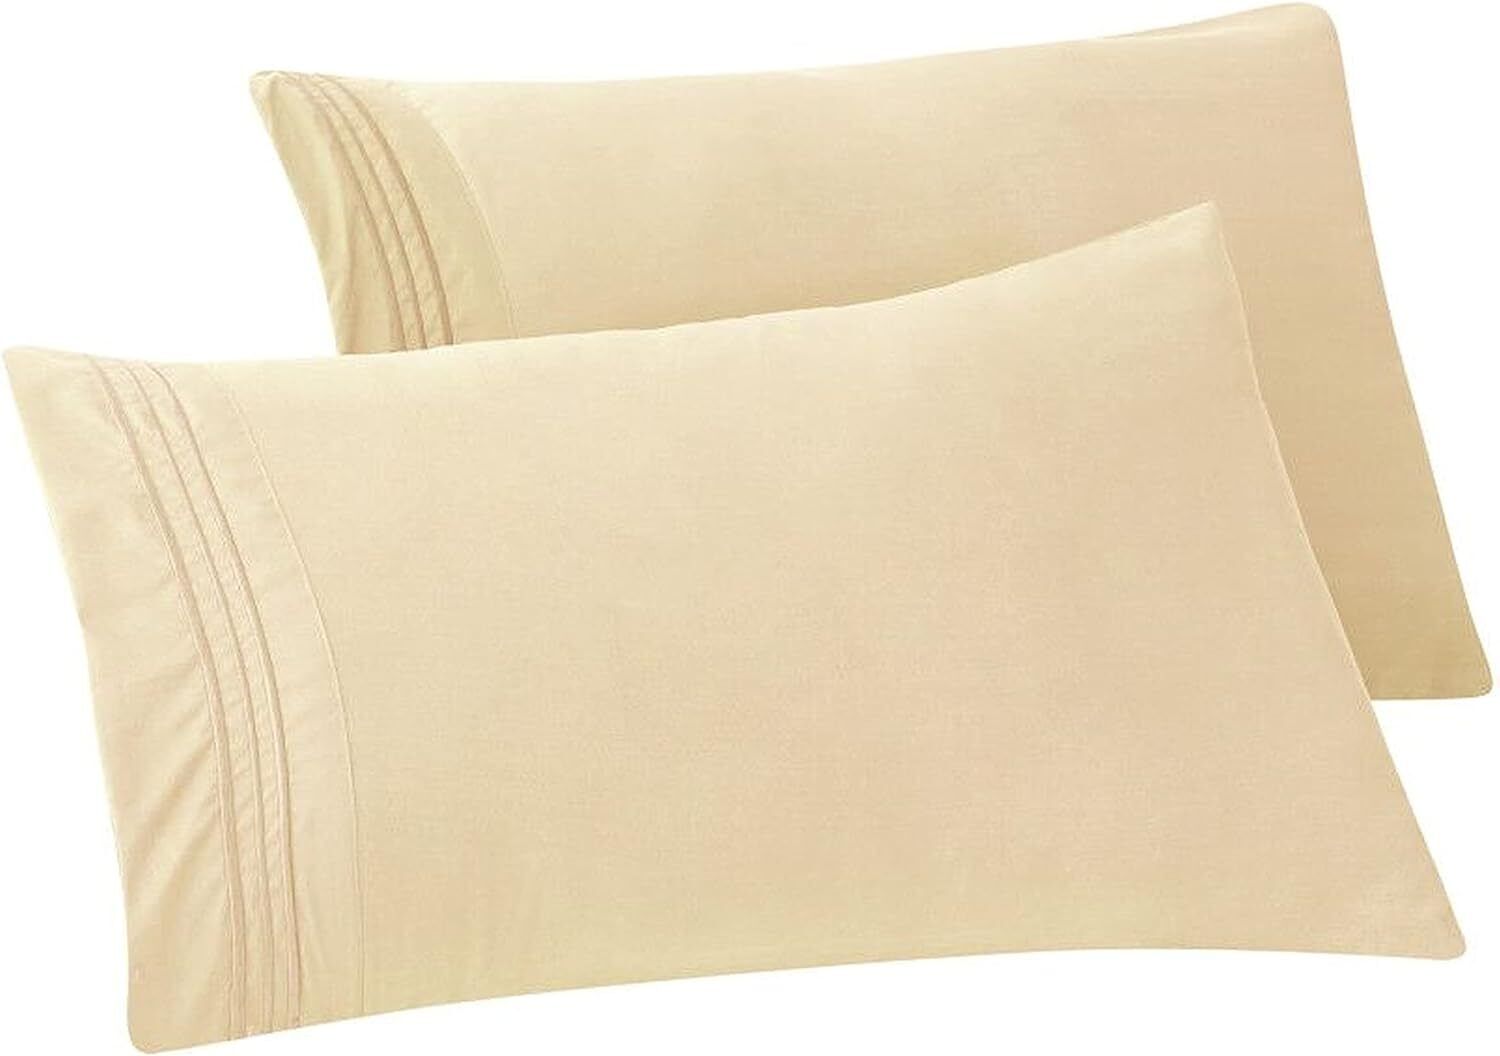 Elegant Comfort Premium Hotel Quality 2-Piece Pillowcase Set, King, Cream 